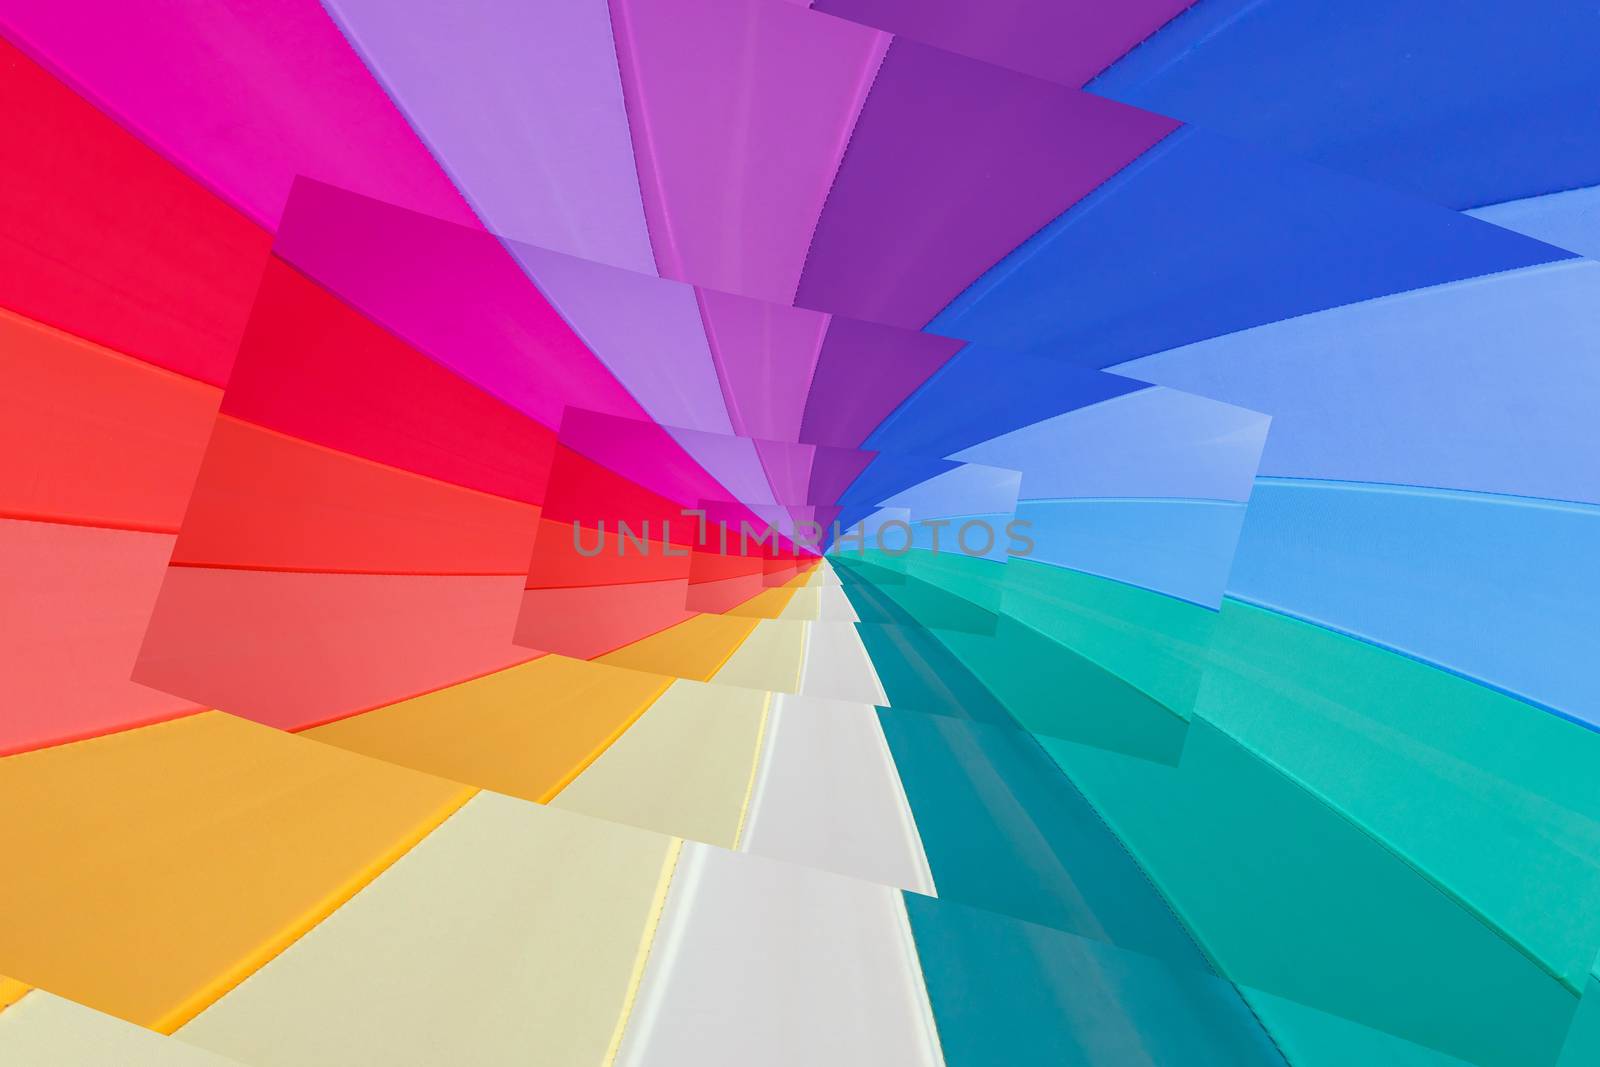 multicoloured wedges umbrella  seem a vortex of colours